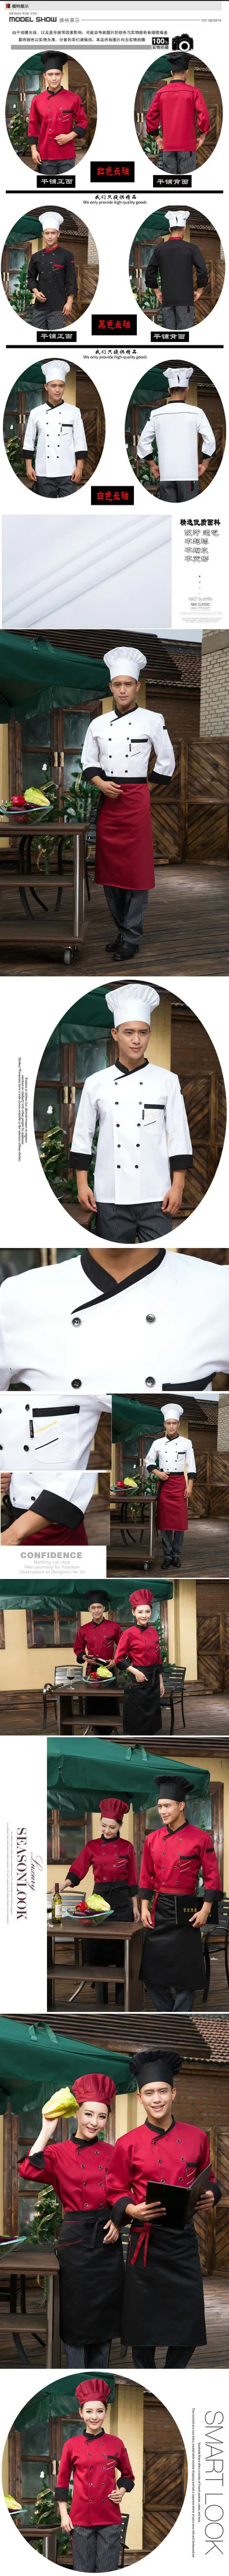 Шеф-повара отеля одежда Длинные рукава Плита Baker Форма торт ресторан гостиничный номер костюм Кондитер Кухня одежда B-5573